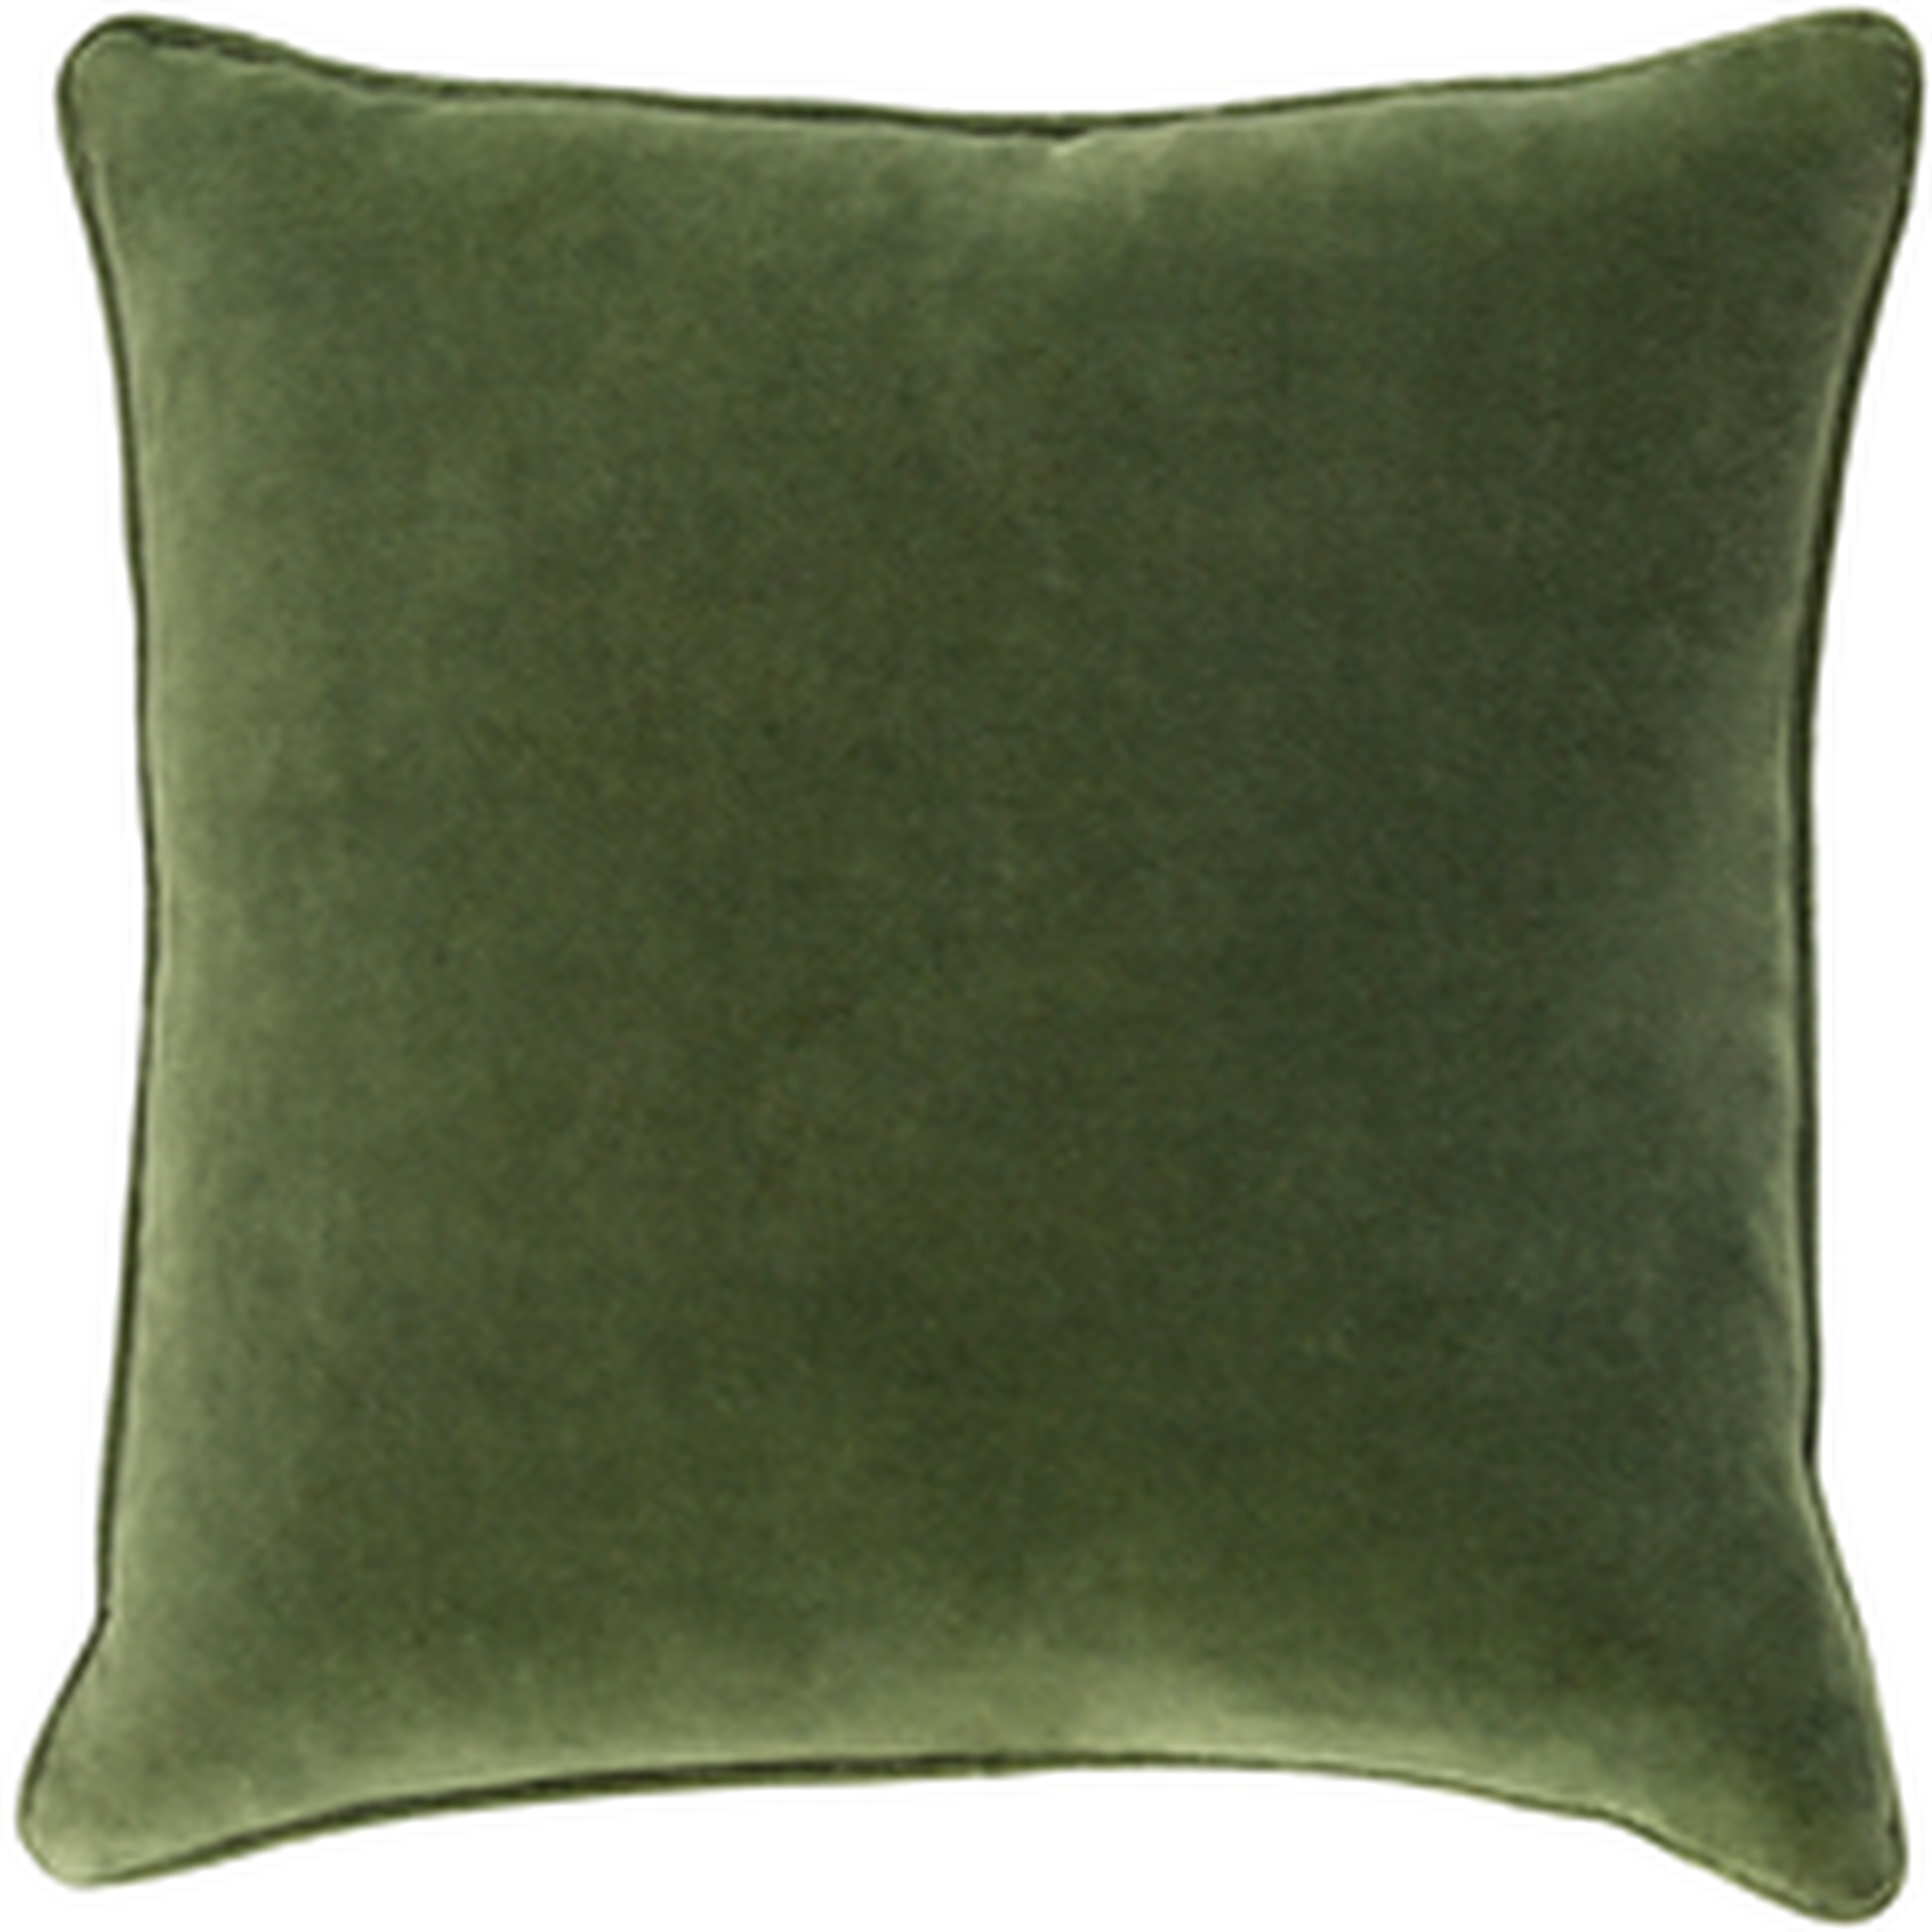 Safflower Pillow -green - 18" x 18" w/poly insert - Neva Home